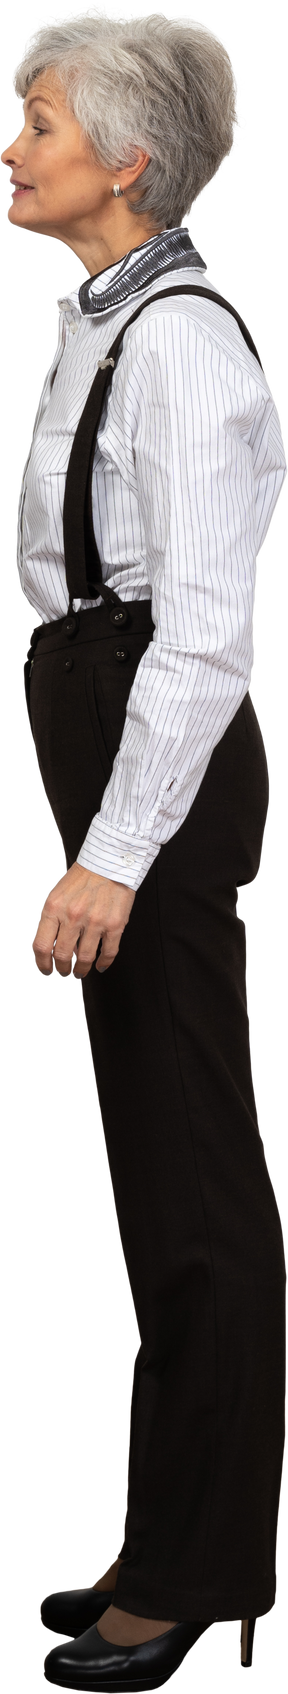 Vista lateral de uma senhora educada vestida com roupas de escritório e sorrindo levemente